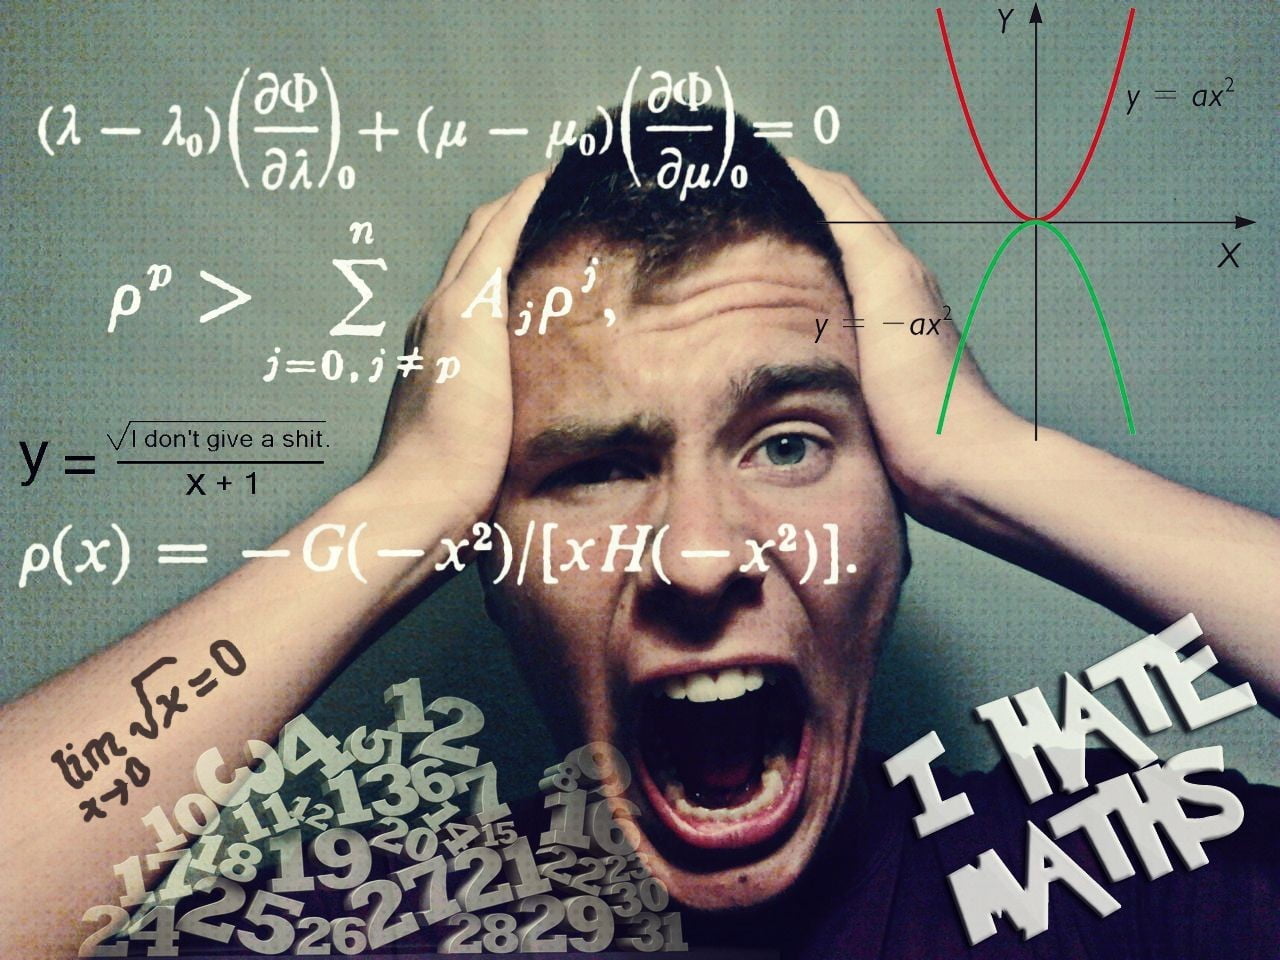 man illustration with text overlay, mathematics